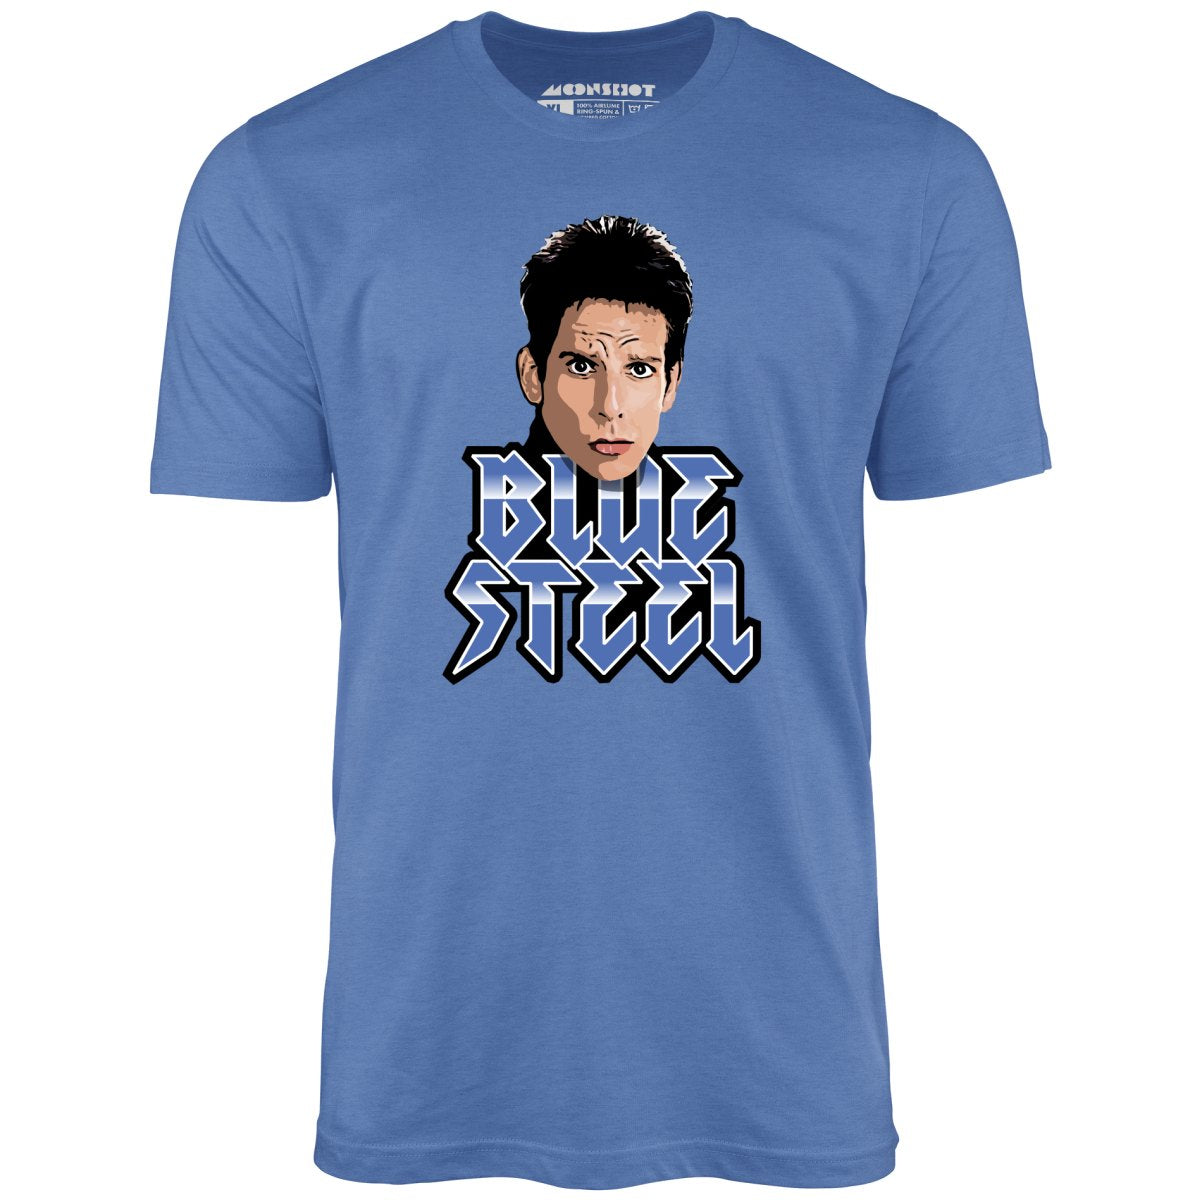 Blue Steel - Derek Zoolander - Unisex T-Shirt